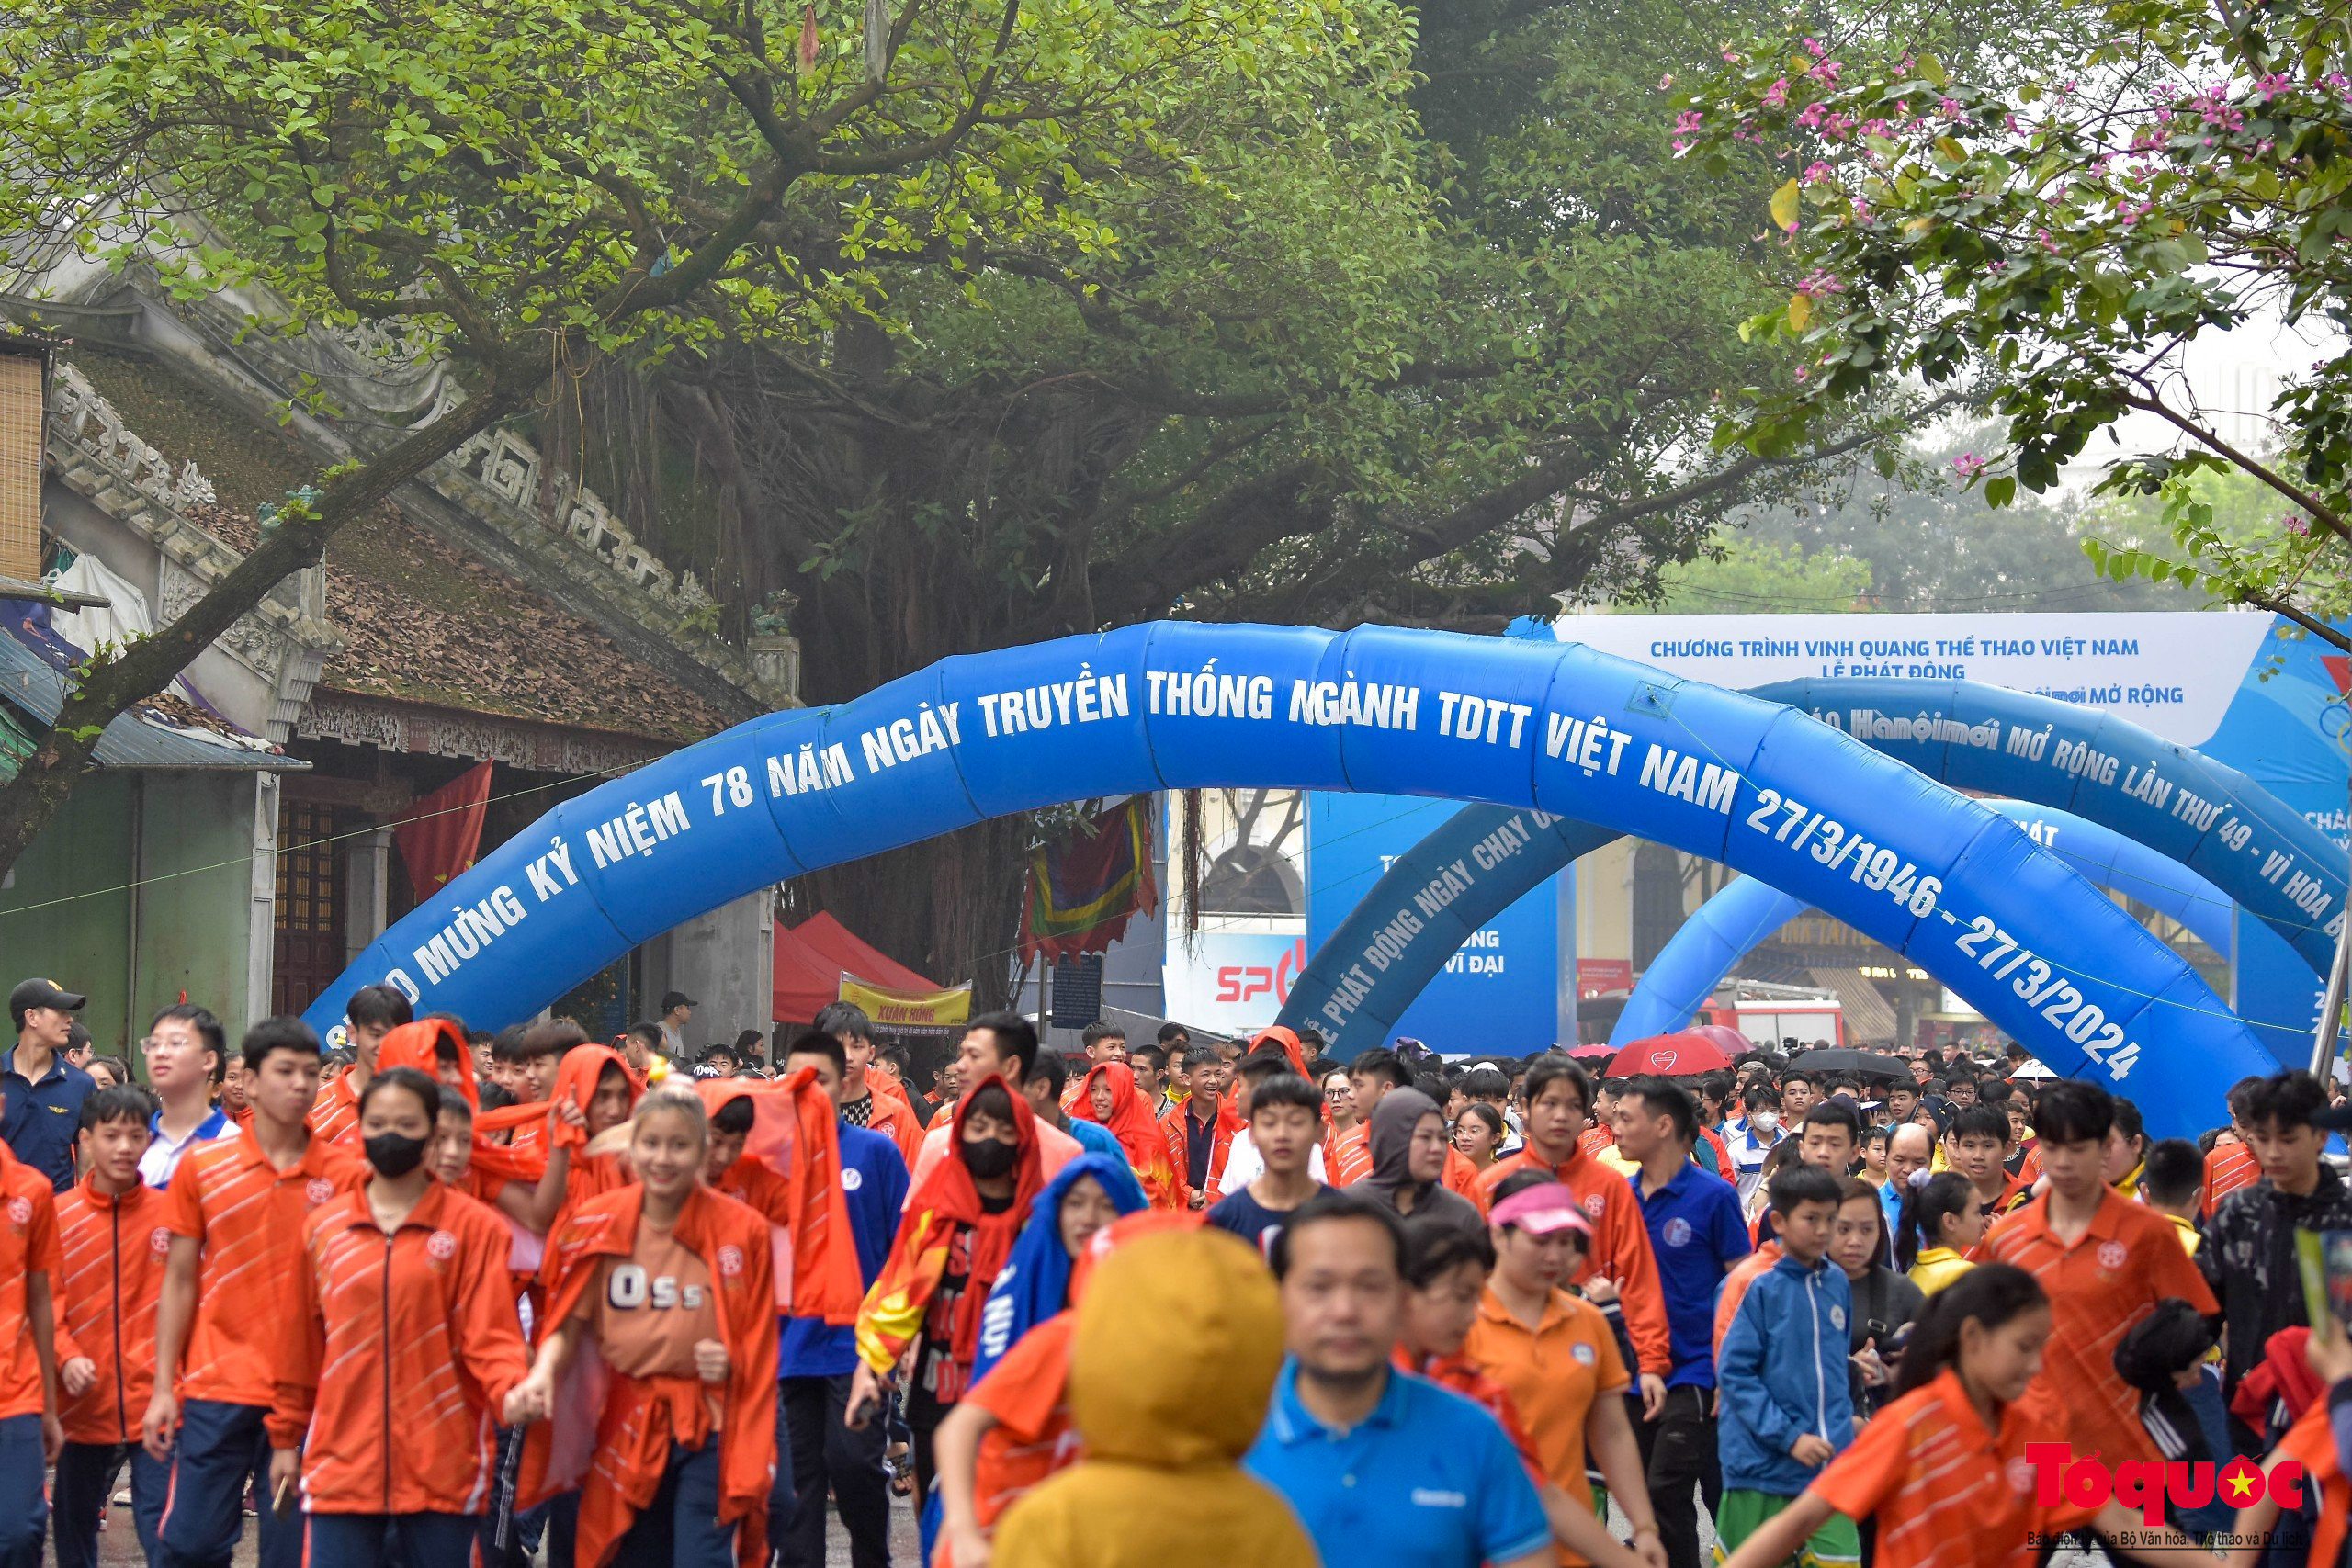 Chùm ảnh: Sôi động chương trình “Vinh quang Thể thao Việt Nam”, phát động Giải chạy Báo Hànộimới mở rộng - Ảnh 18.